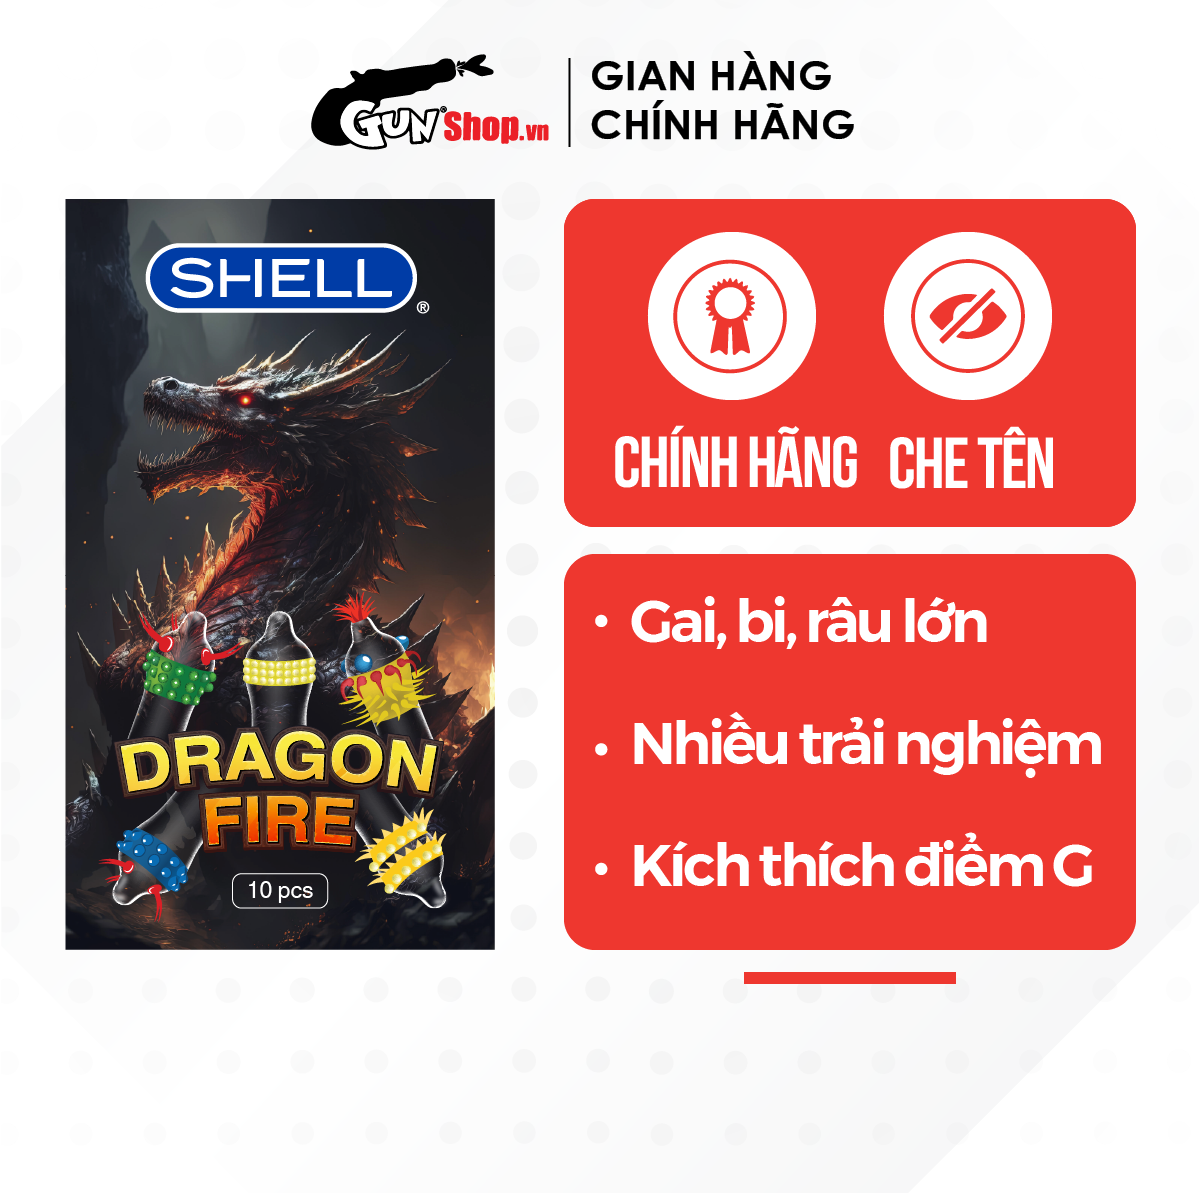 Bao cao su Shell Dragon Fire - Hộp 5 bao gai, bi nổi lớn + 5 bao Shell Performax (Hộp 10 cái) | GUNSHOP VIỆT NAM